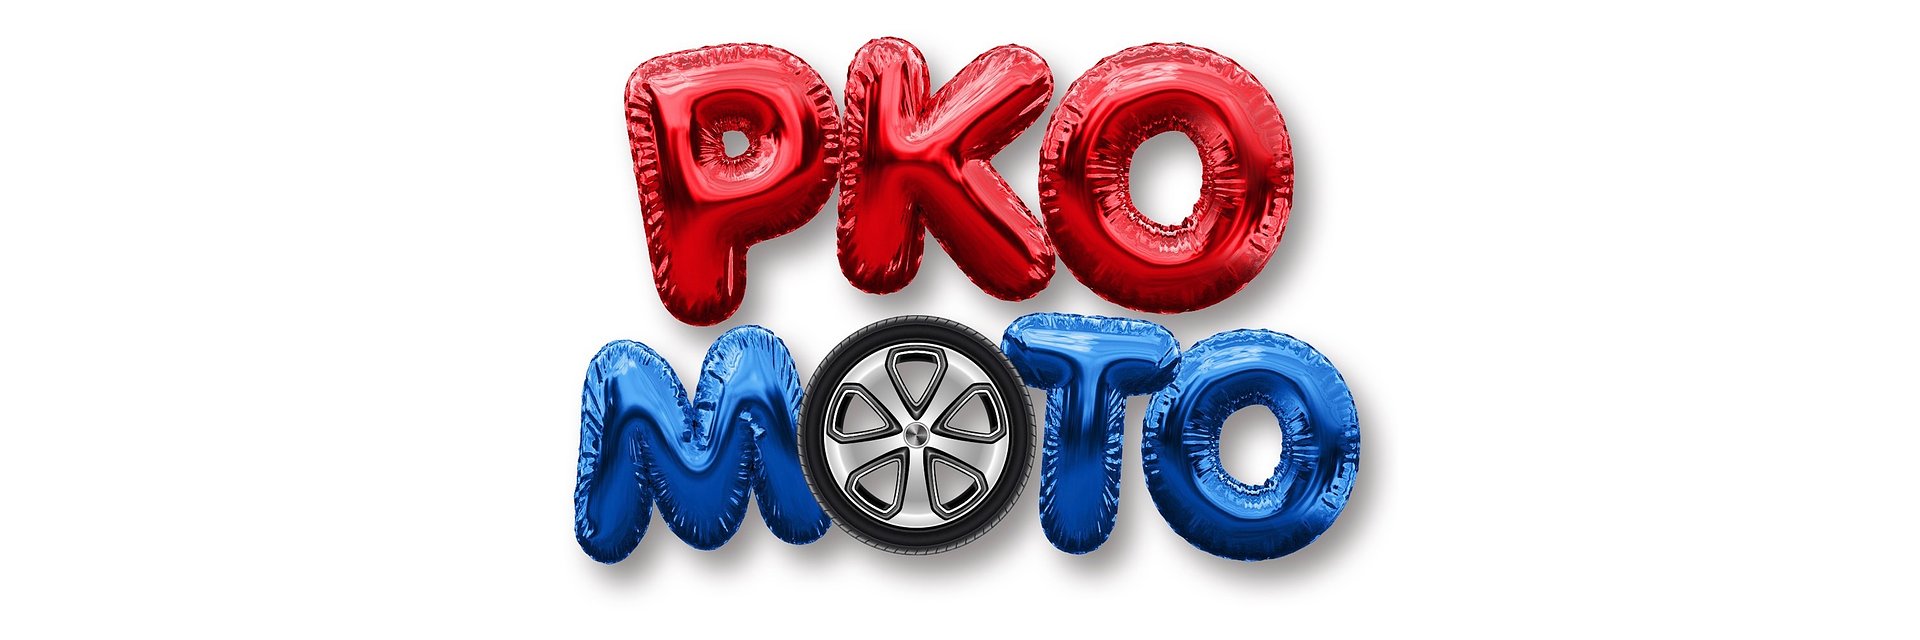 PKO Moto - nowa oferta ubezpieczeń komunikacyjnych w PKO Banku Polskim